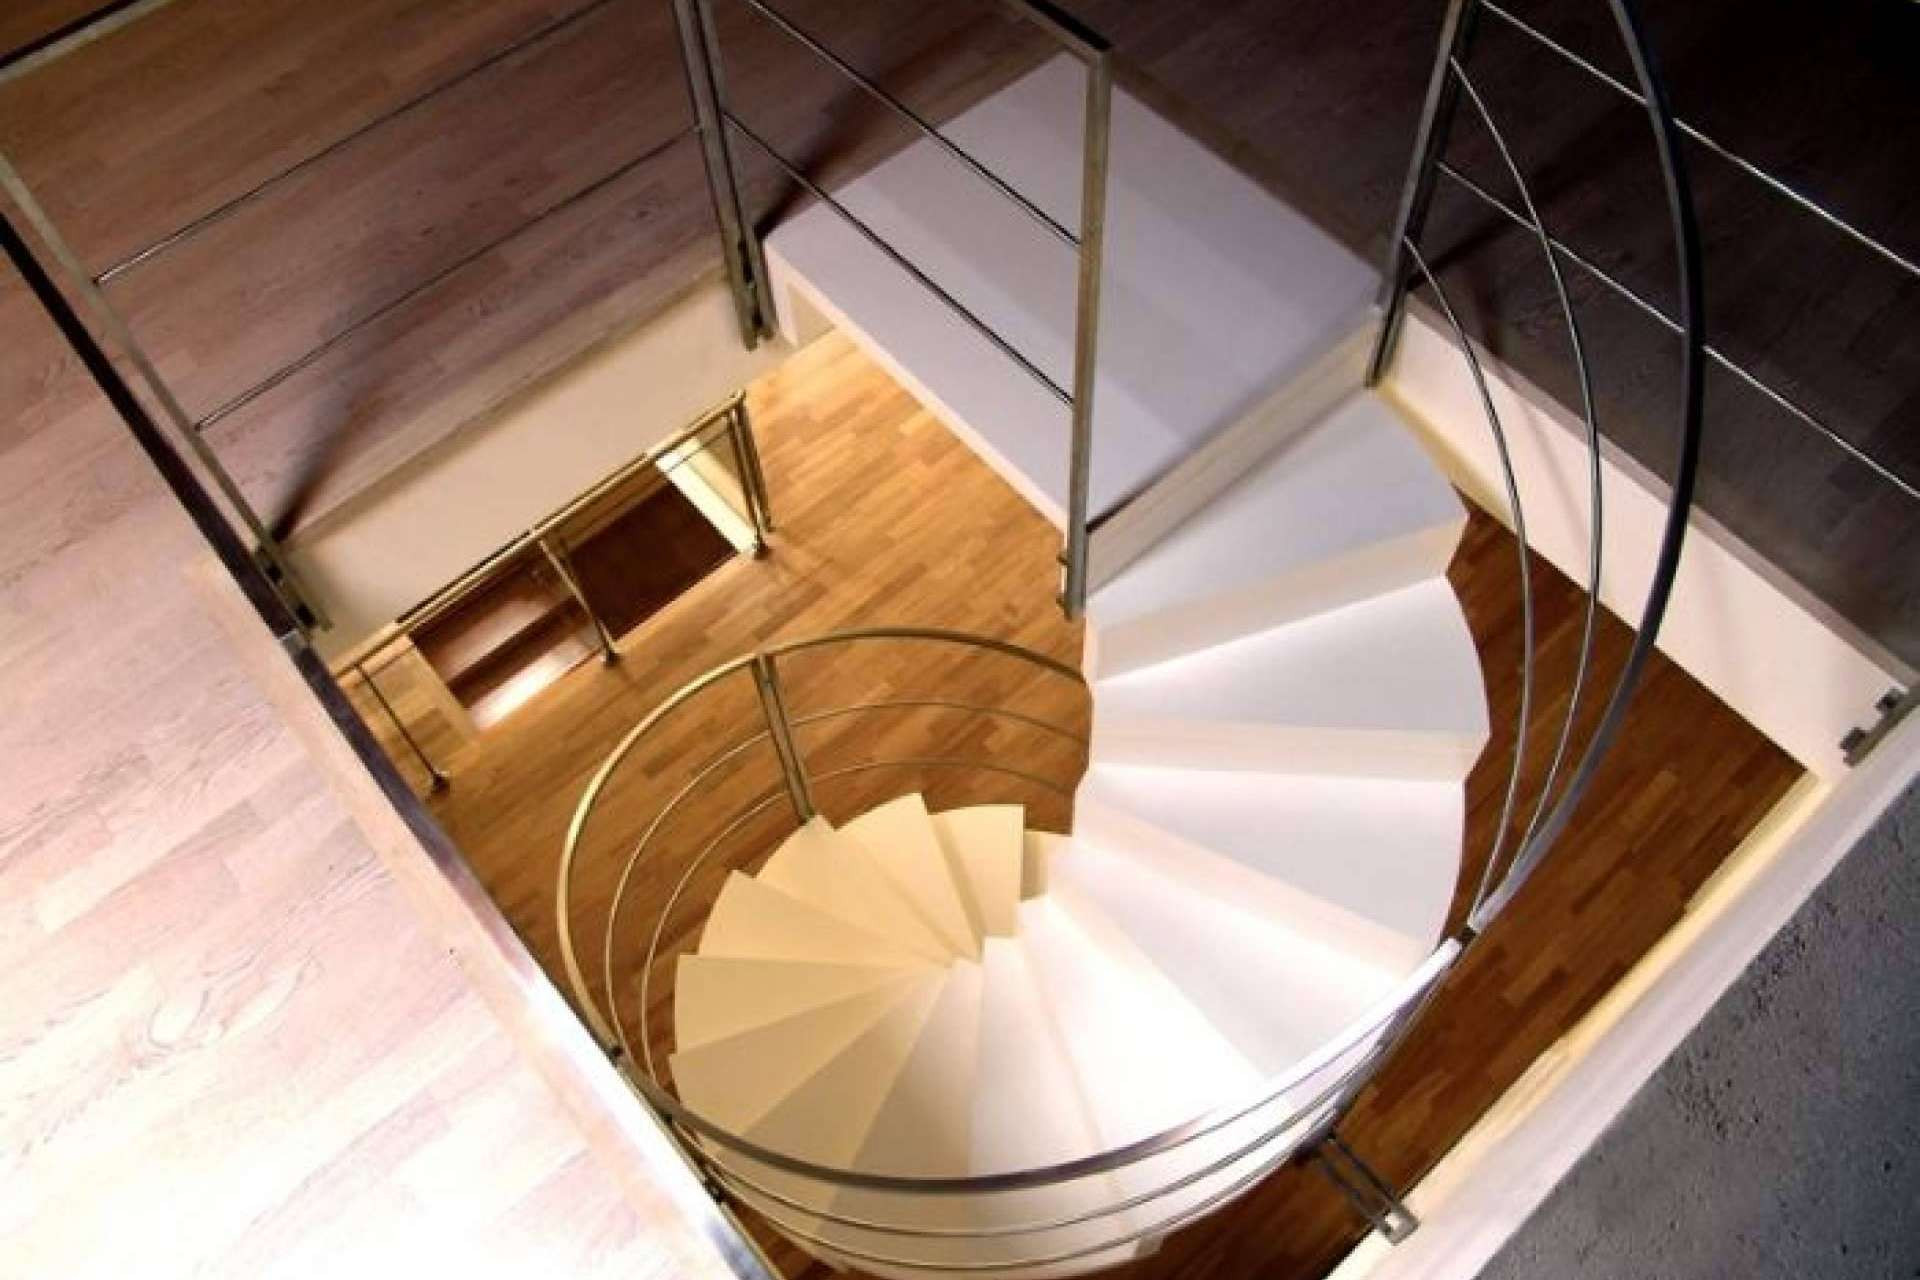  Diseño y funcionalidad con las escaleras de caracol de Enesca 